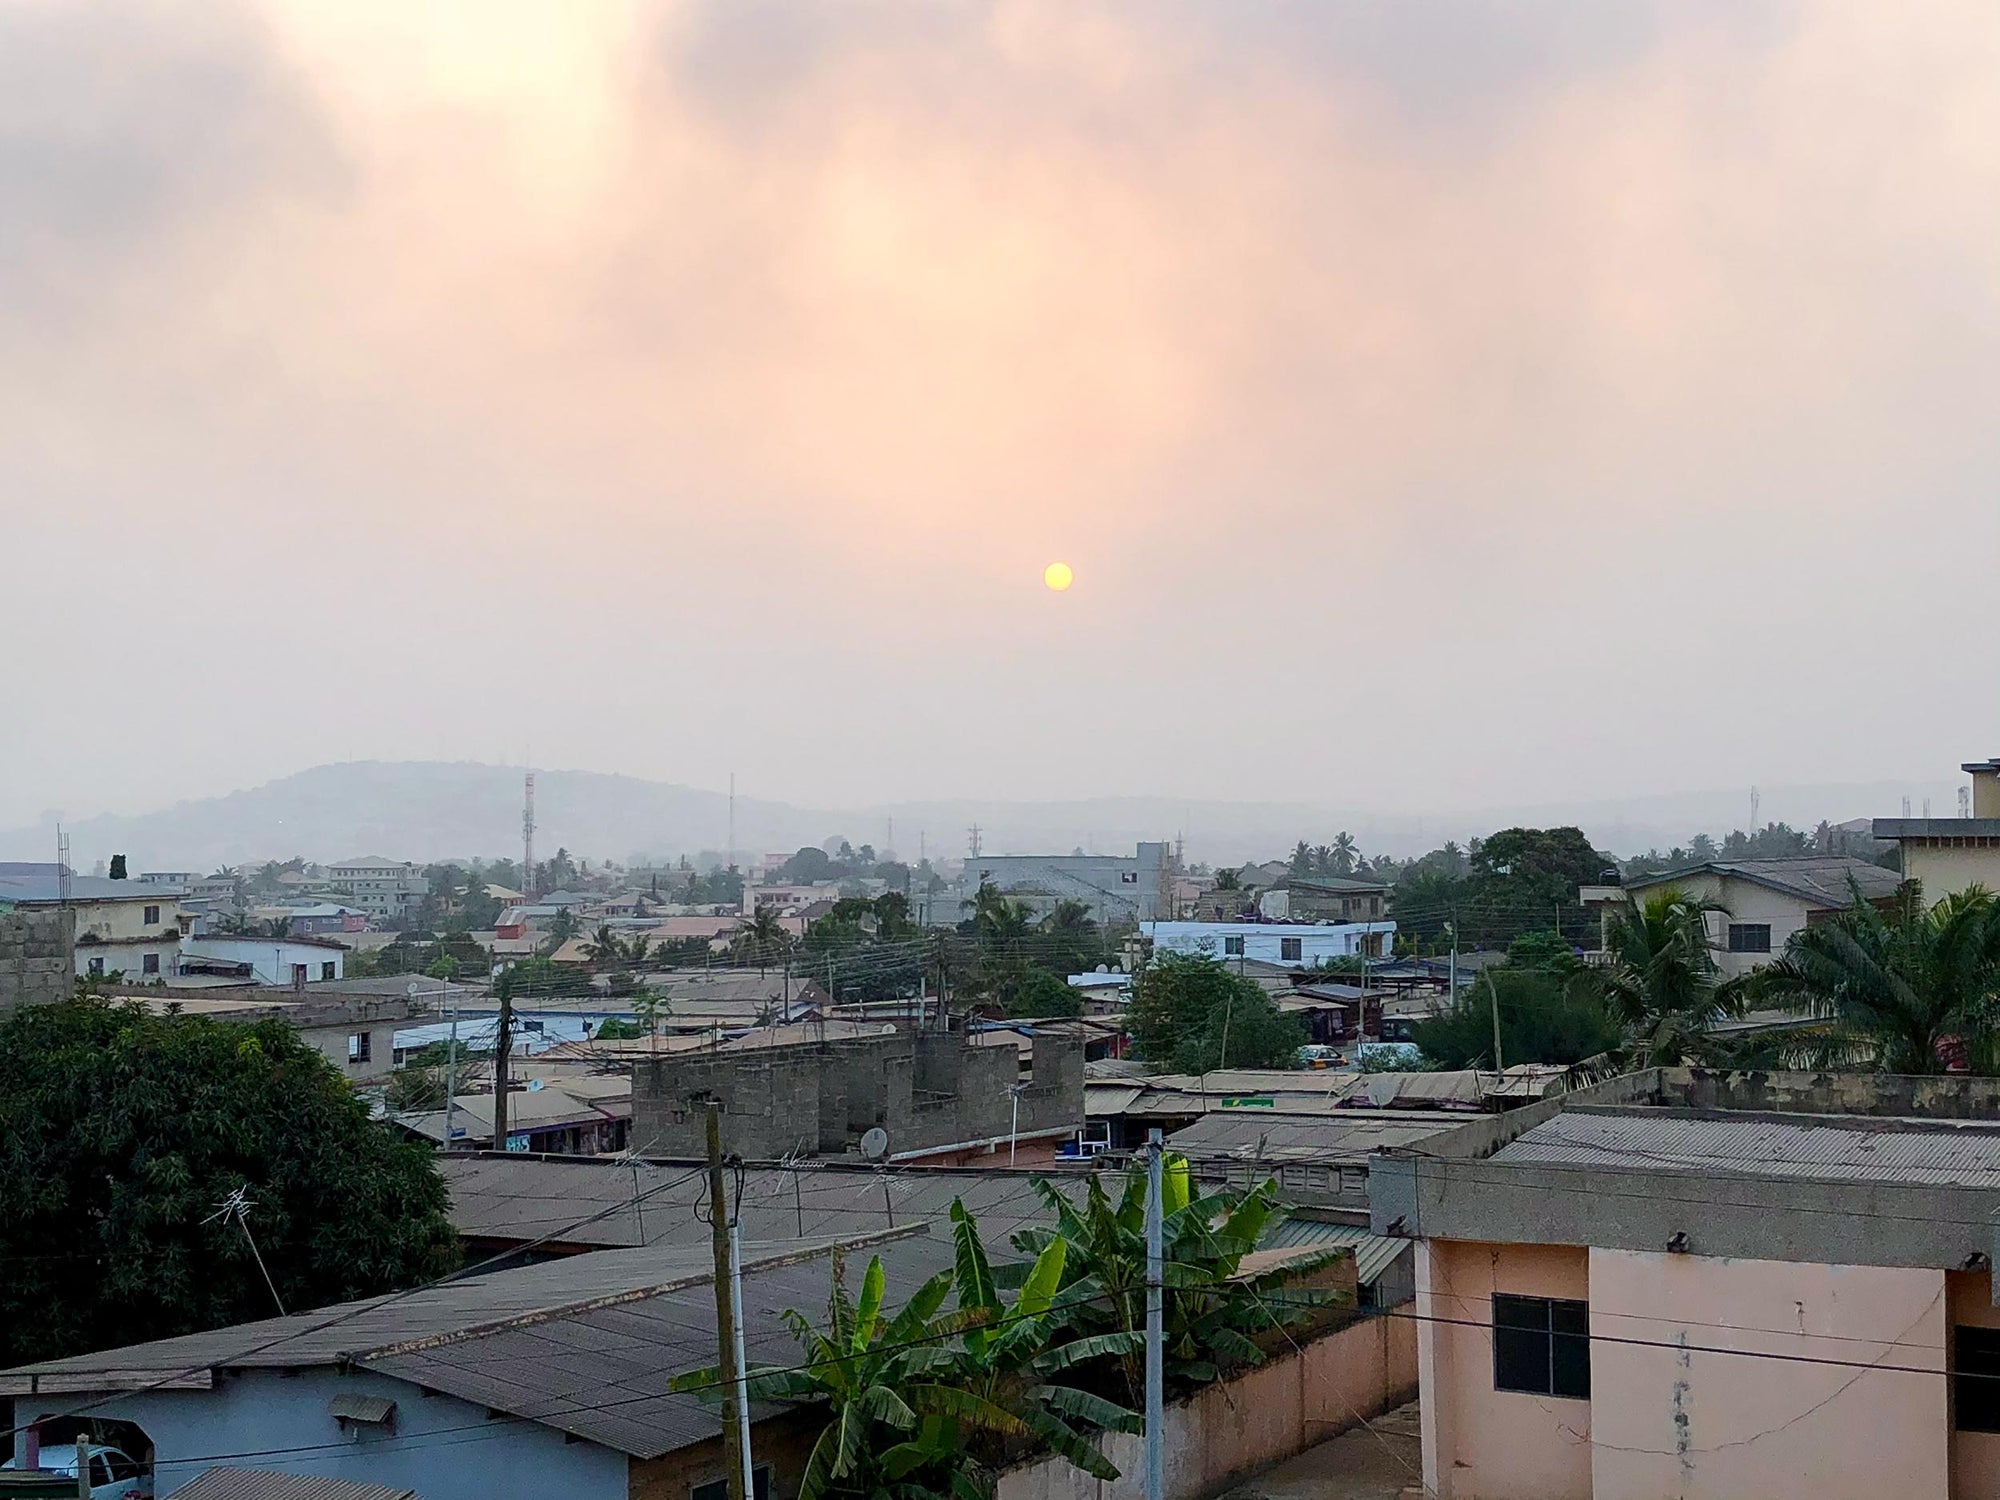 Tagebuch Ghana: Auf der Suche nach Sheabutter aus klarer Herkunft